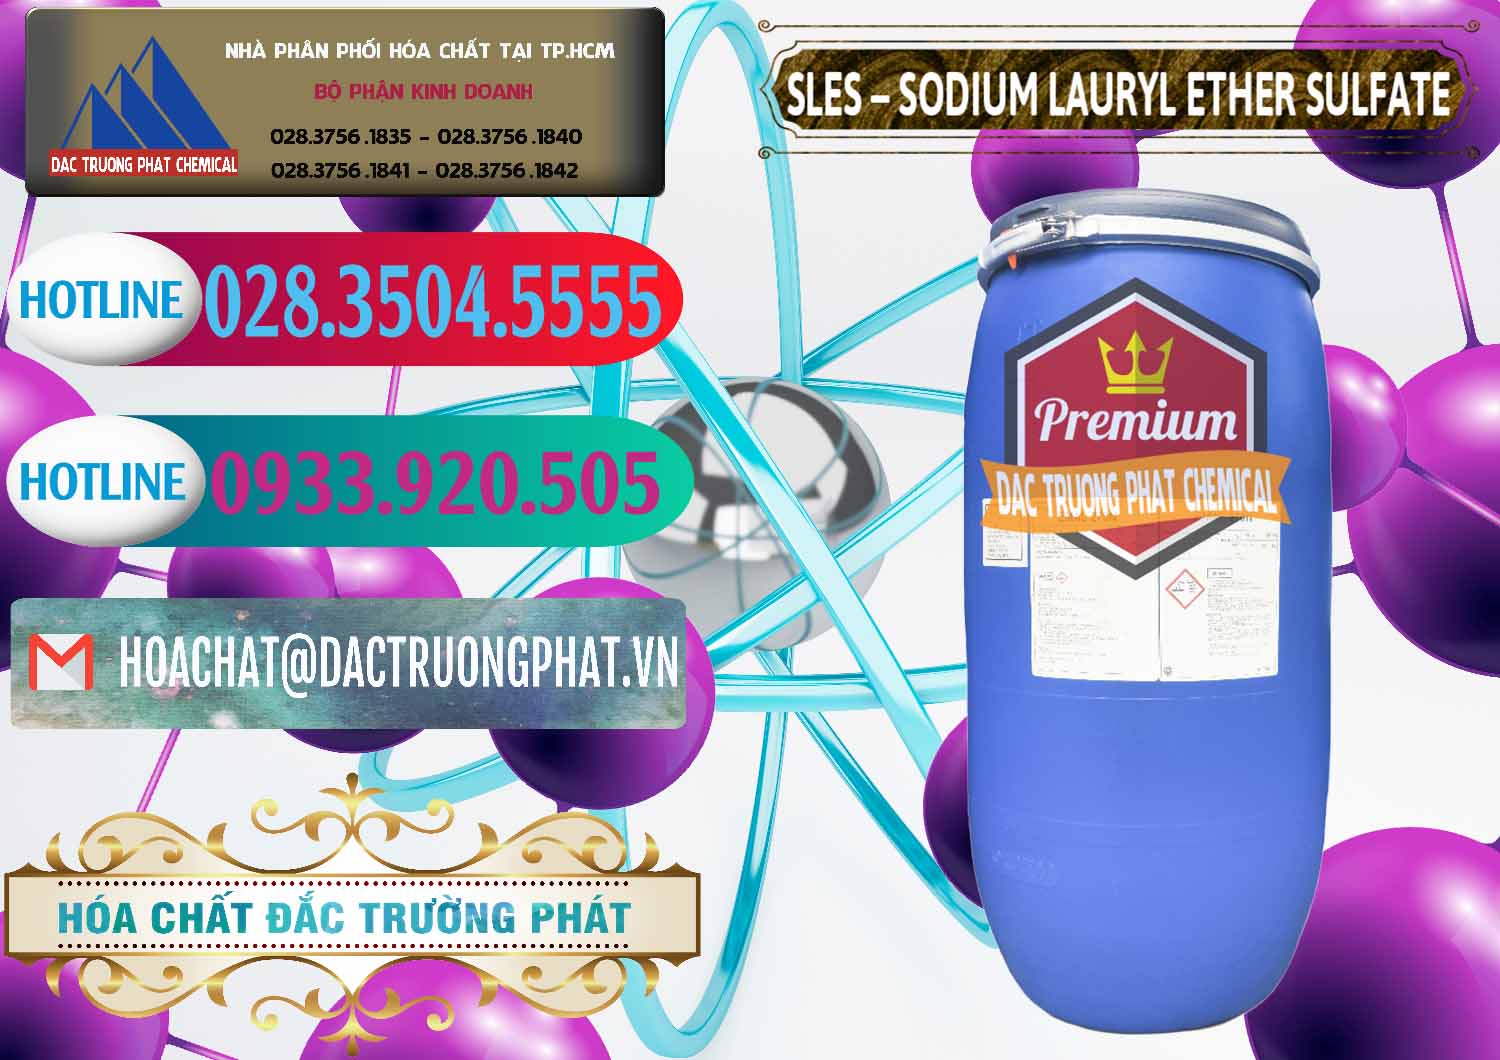 Đơn vị chuyên nhập khẩu - bán Chất Tạo Bọt Sles - Sodium Lauryl Ether Sulphate Kao Indonesia - 0046 - Chuyên nhập khẩu & phân phối hóa chất tại TP.HCM - truongphat.vn